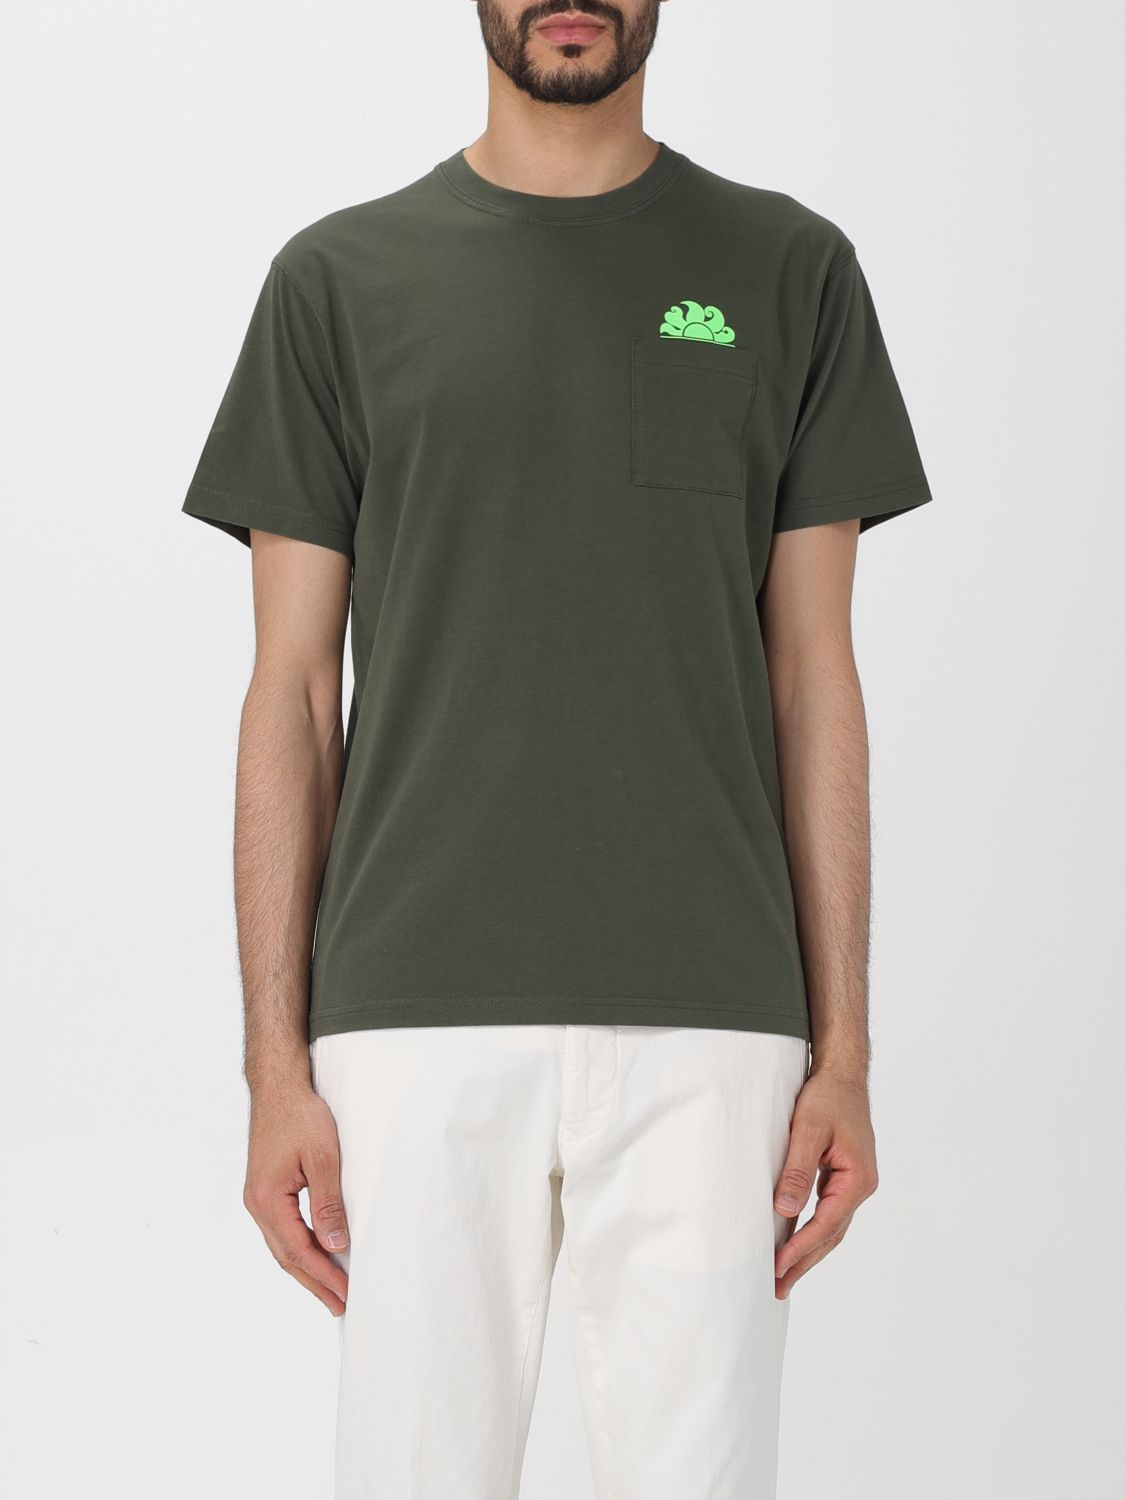 Sundek T-Shirt SUNDEK Men colour Military